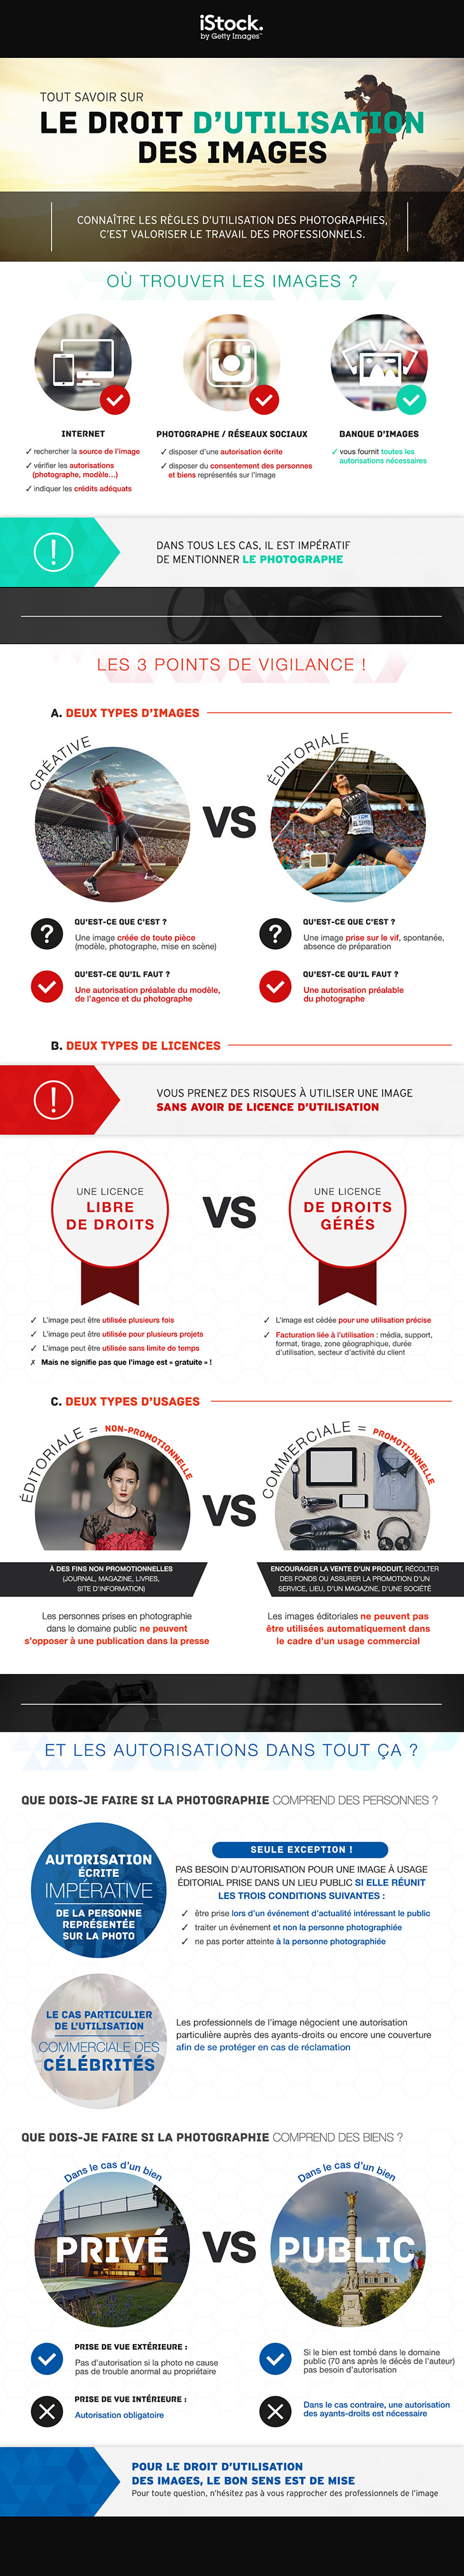 Infographie : Le droit à l'image iStock 